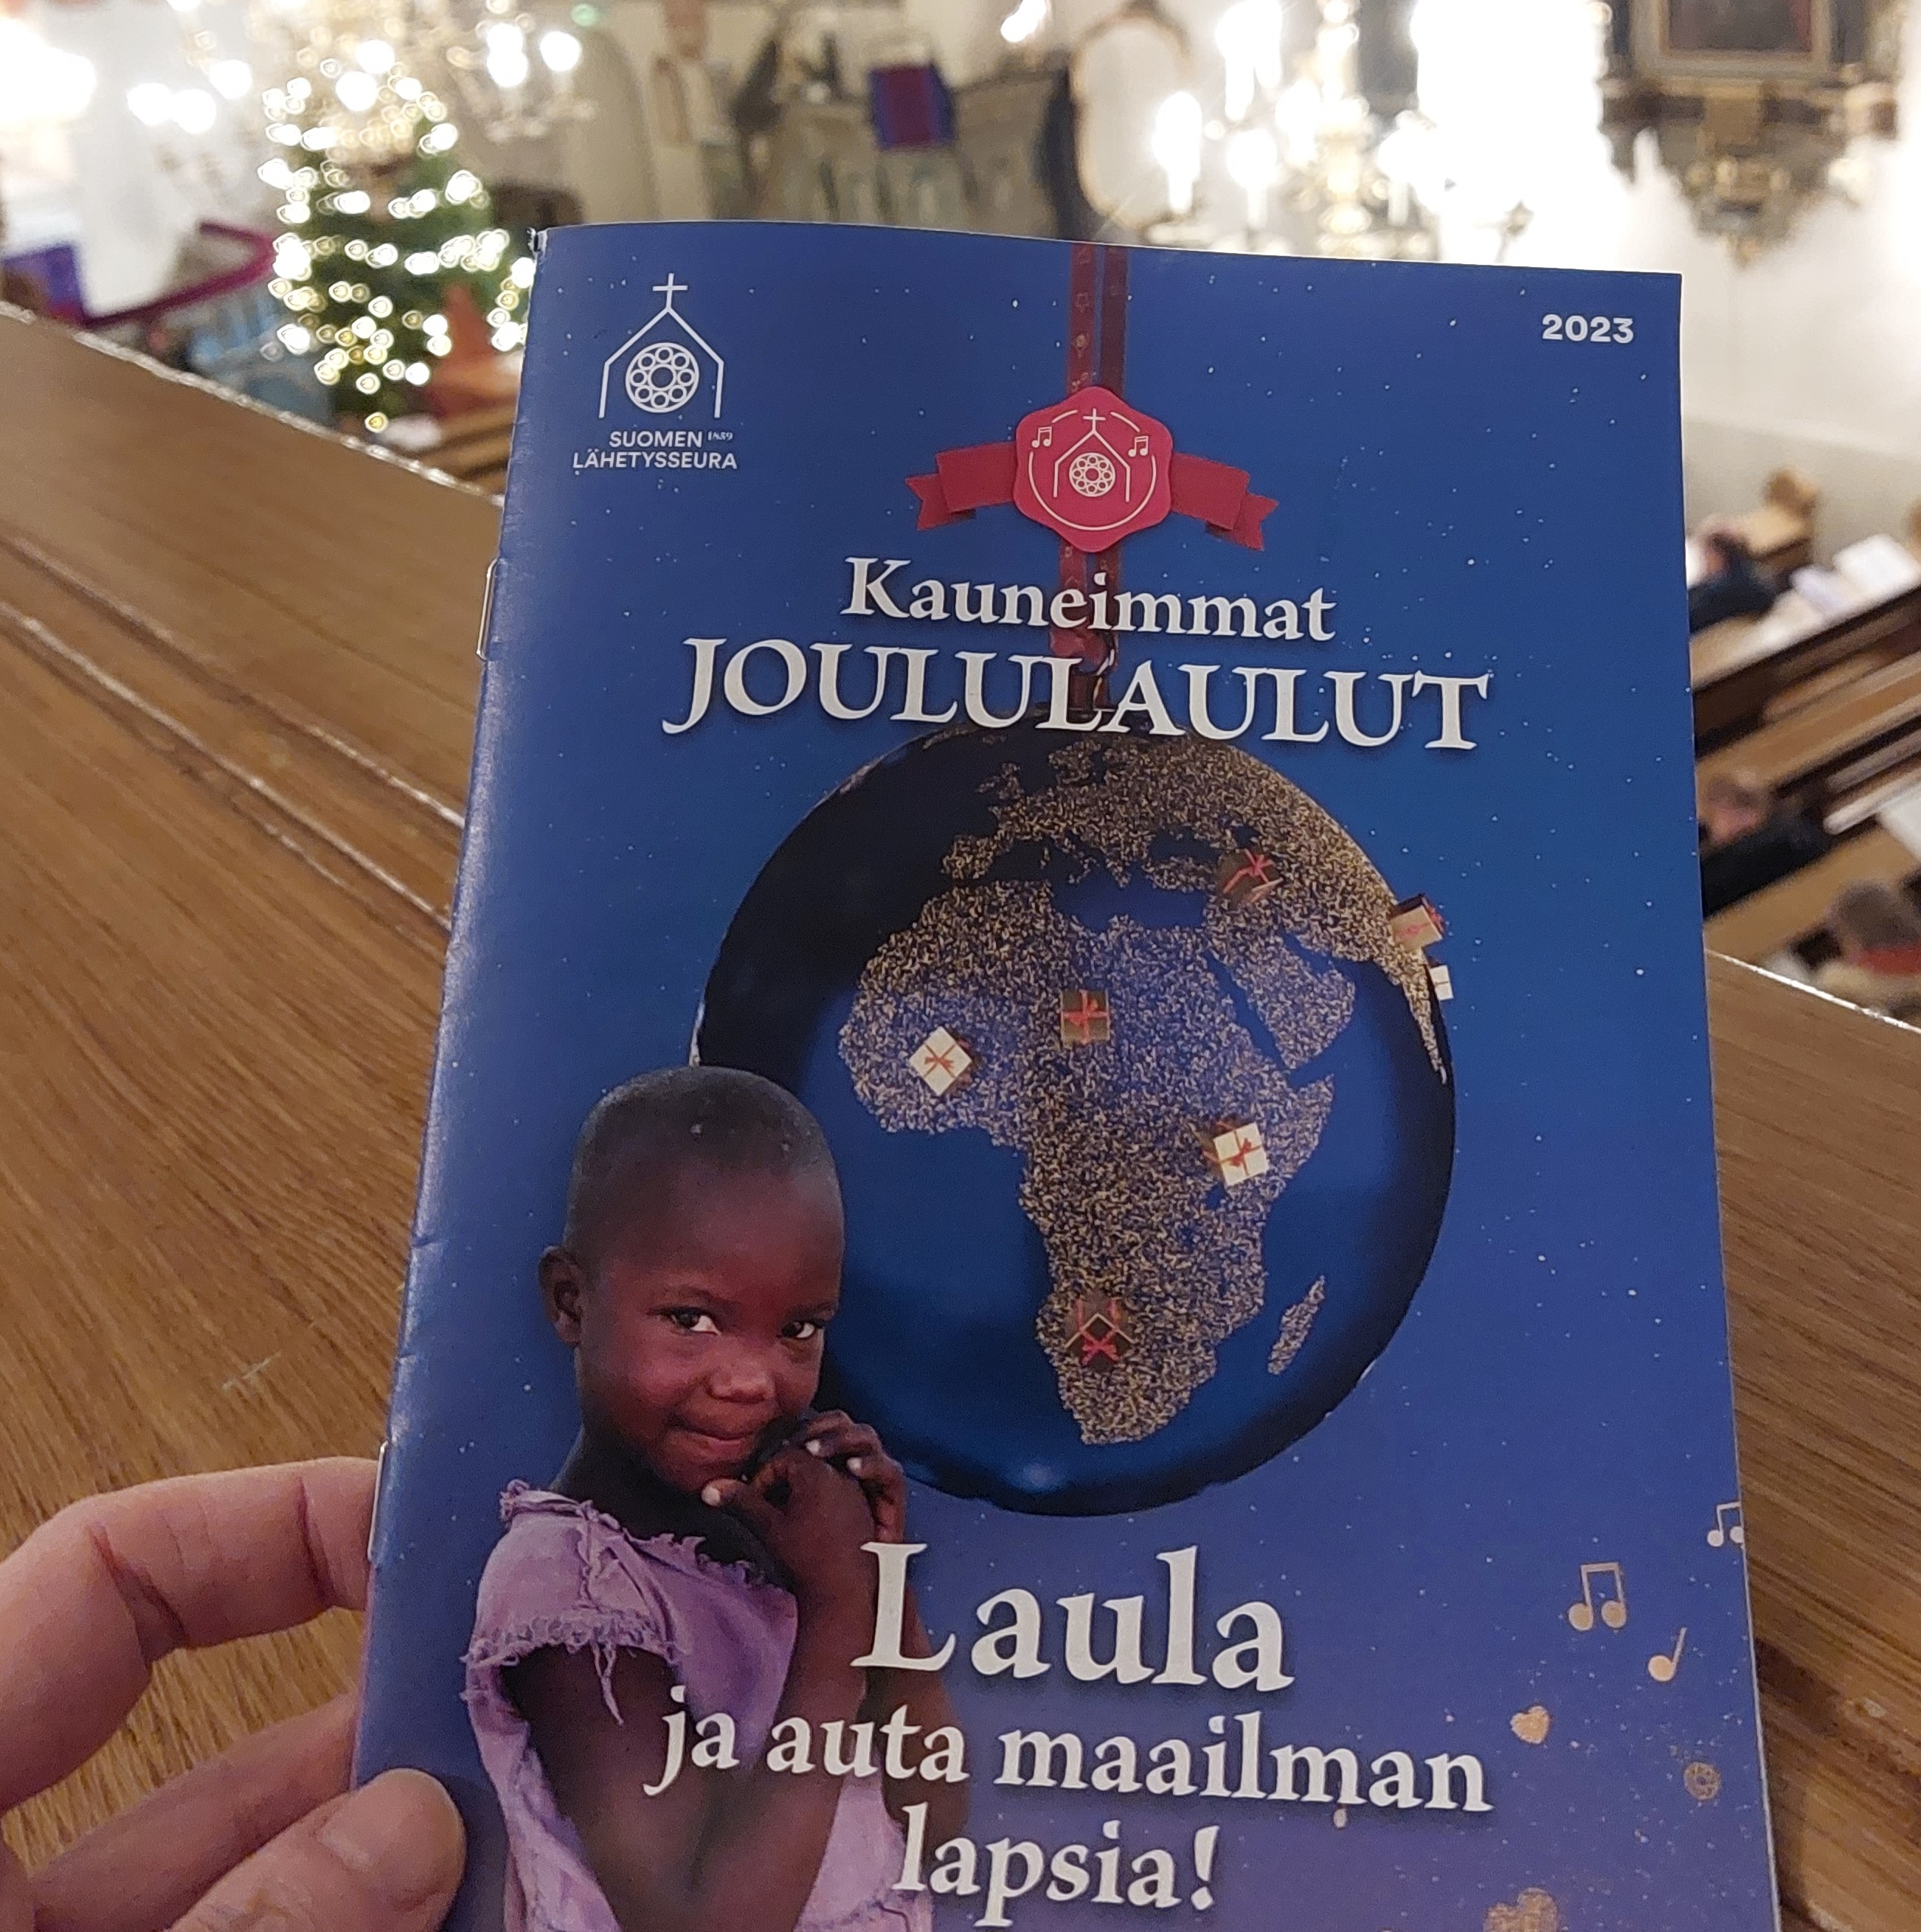 Kauneimmat Joululaulut -lauluvihkon kansi, jossa on lapsi, maapallo ja teksti: Laula ja auta maailman lapsia.